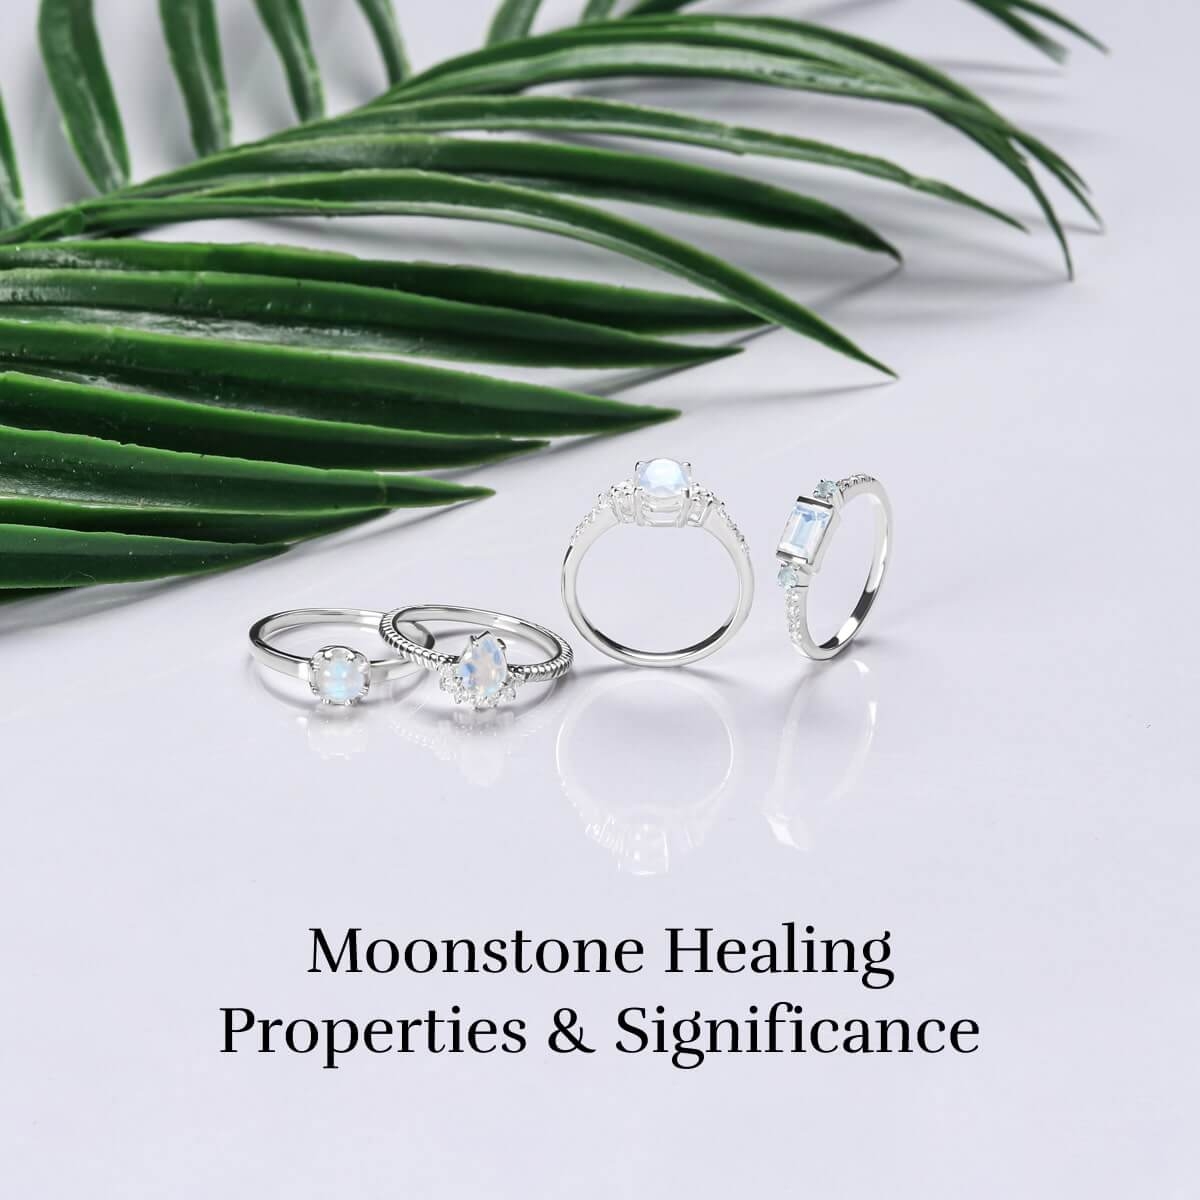 Healing properties and benefits of moonstone